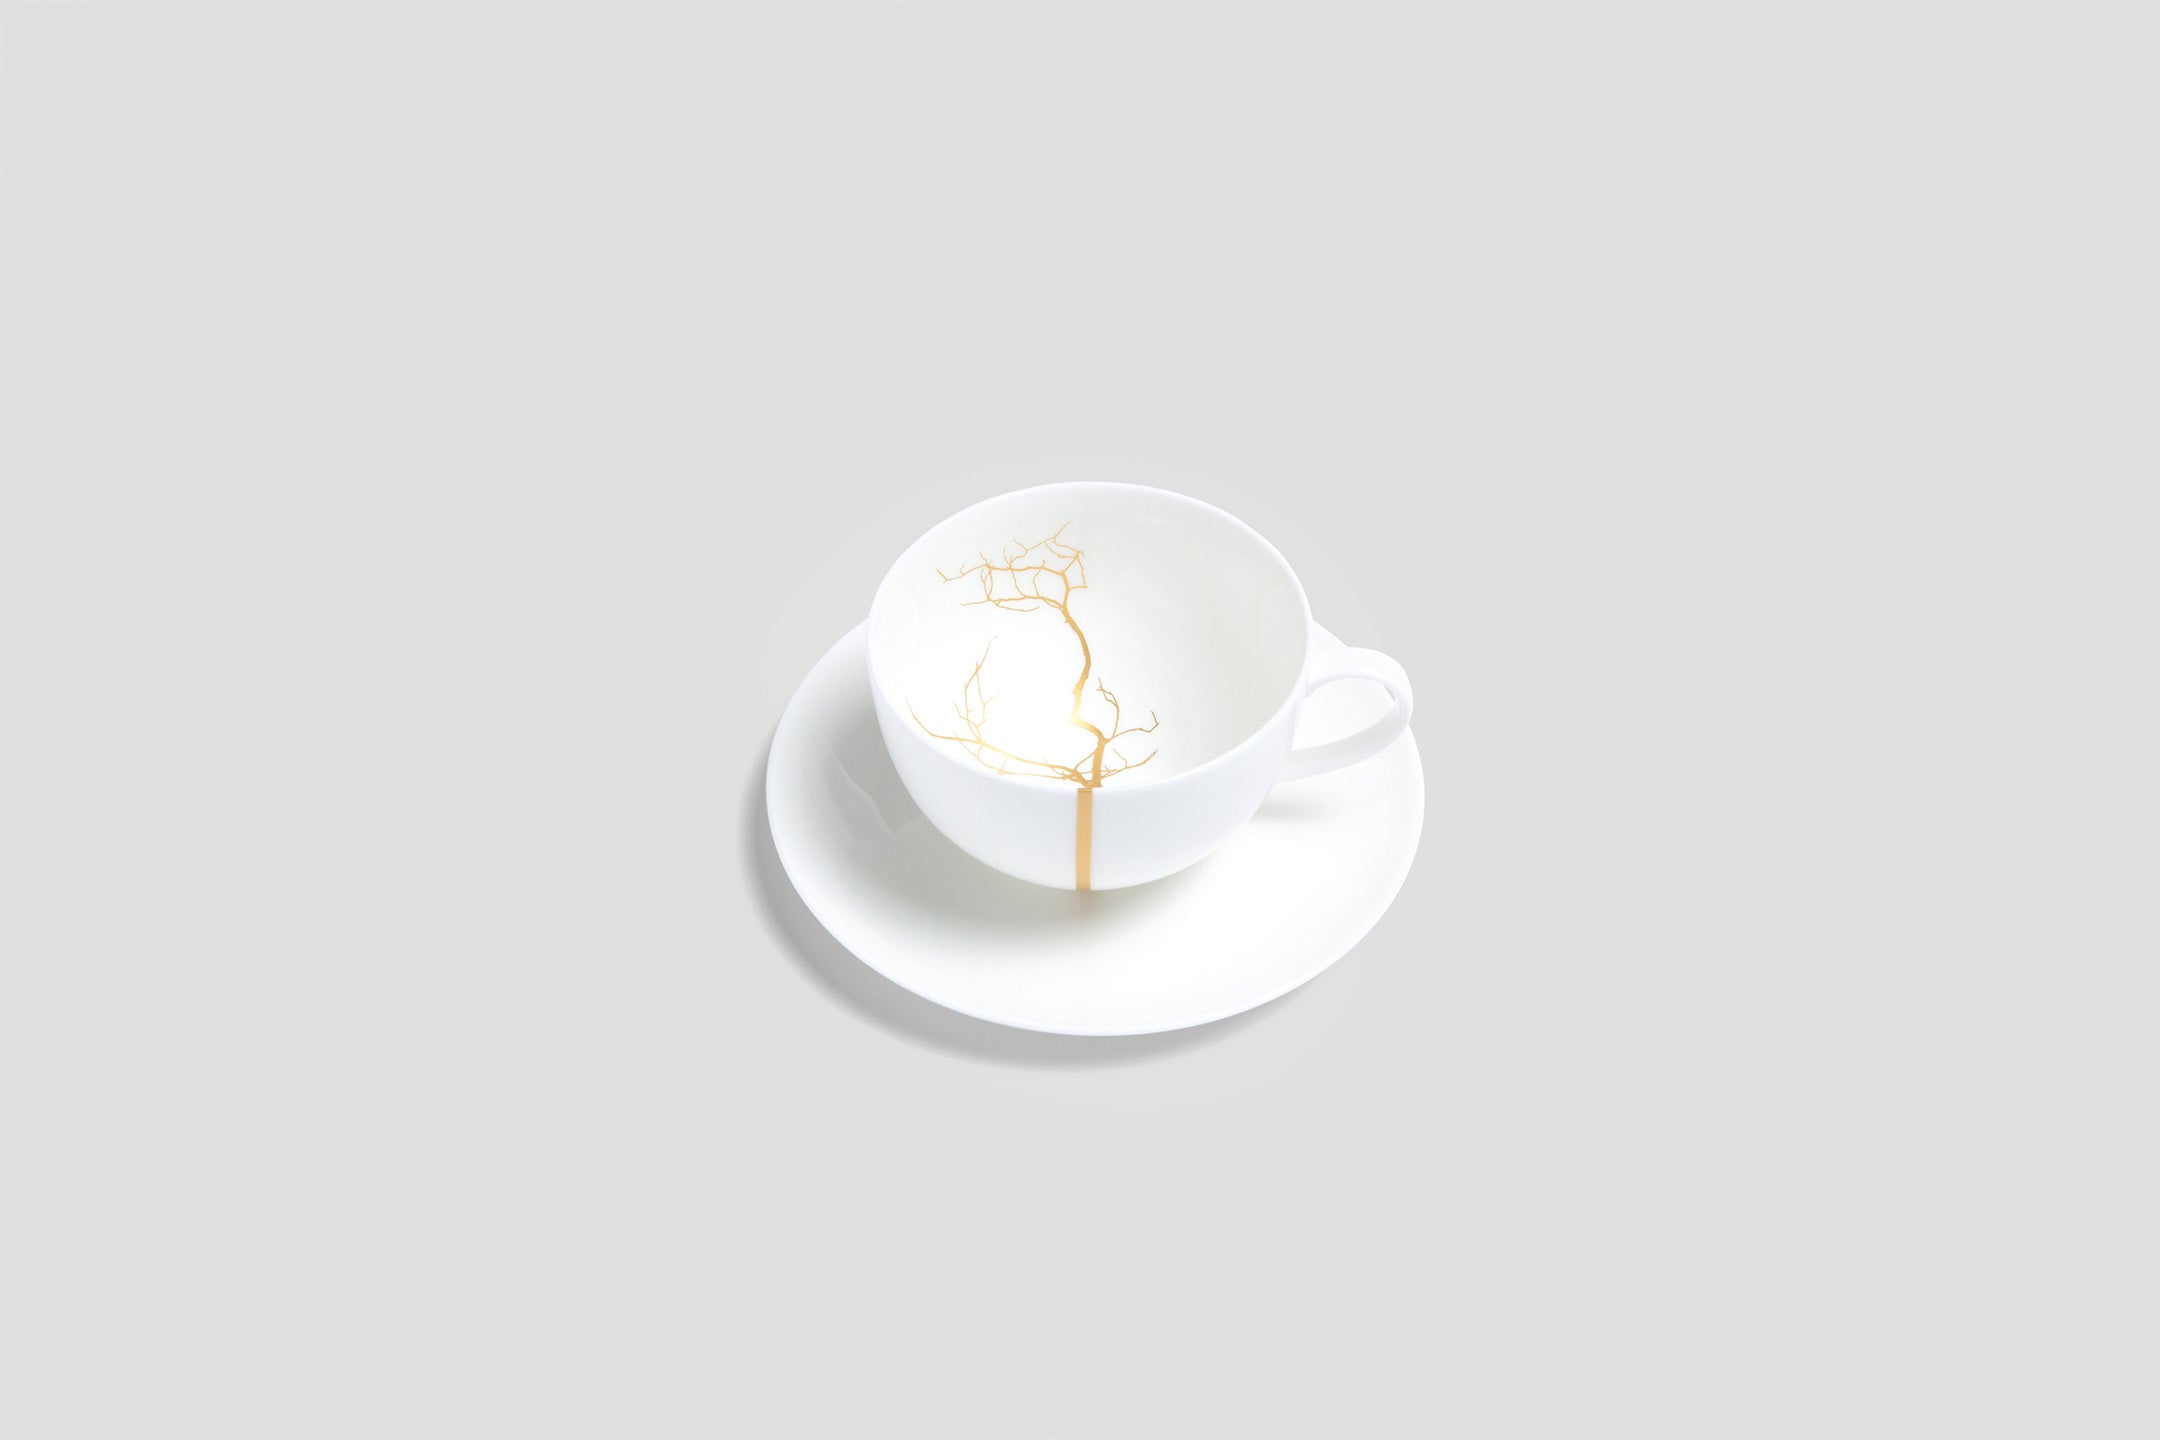 Designer-Luxury-Modern-Dibbern Golden Forest Breakfast Cup & Saucer-Dibbern-Golden Forest-Gold-Bodo Sperlein-Bone China-Designer-Luxury-Modern-Tasse-Becher-Kaffee Tasse